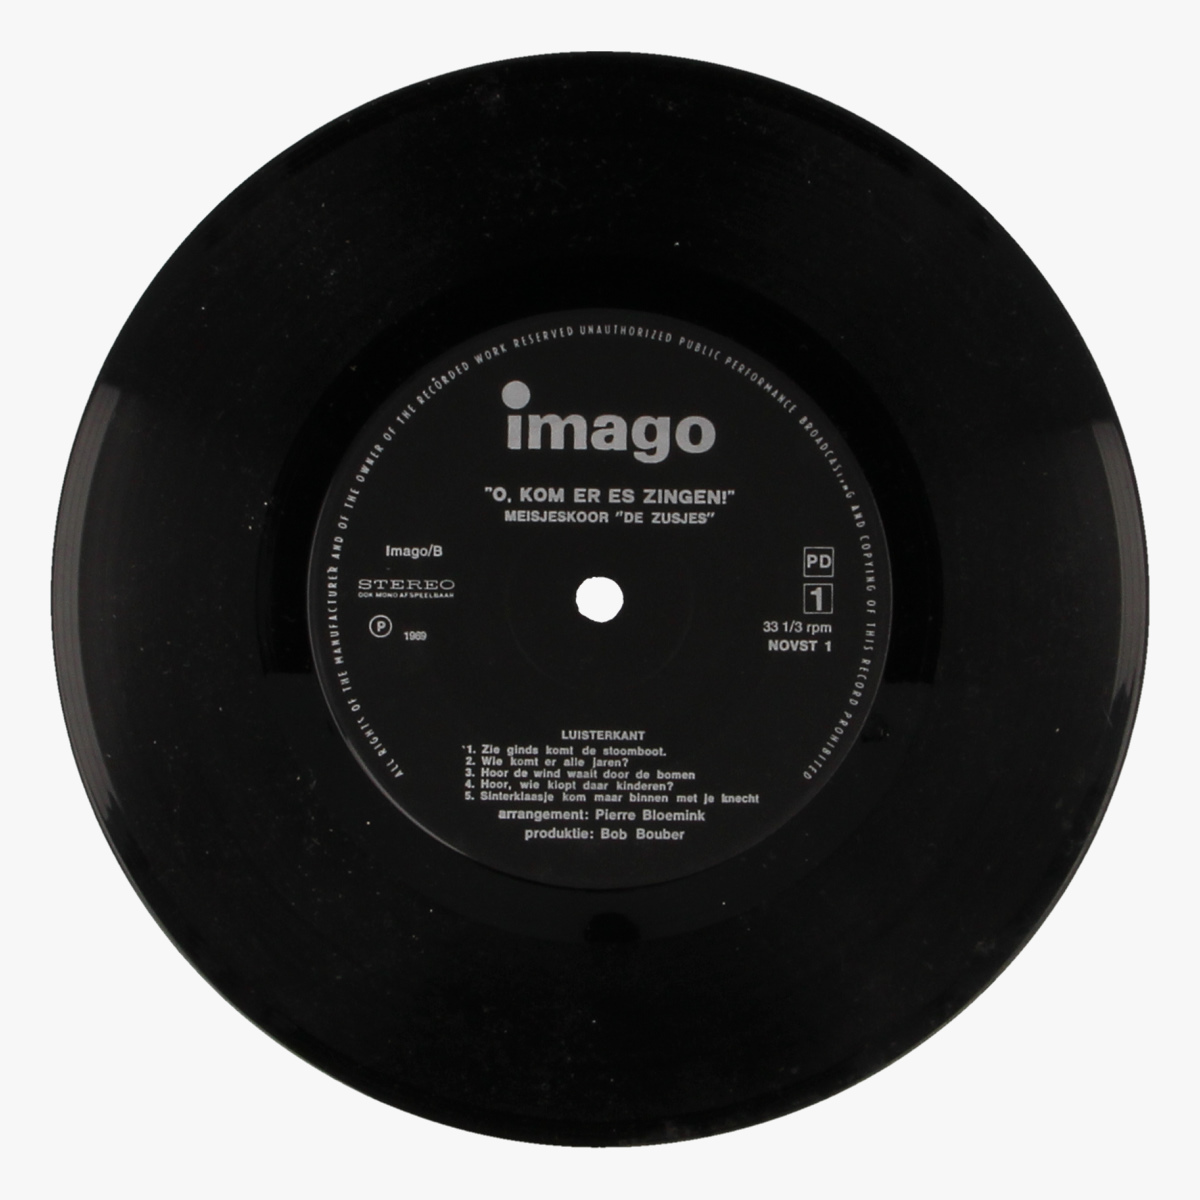 Afbeeldingen van O, kom eens zingen - Imago LP 33 1/3toeren